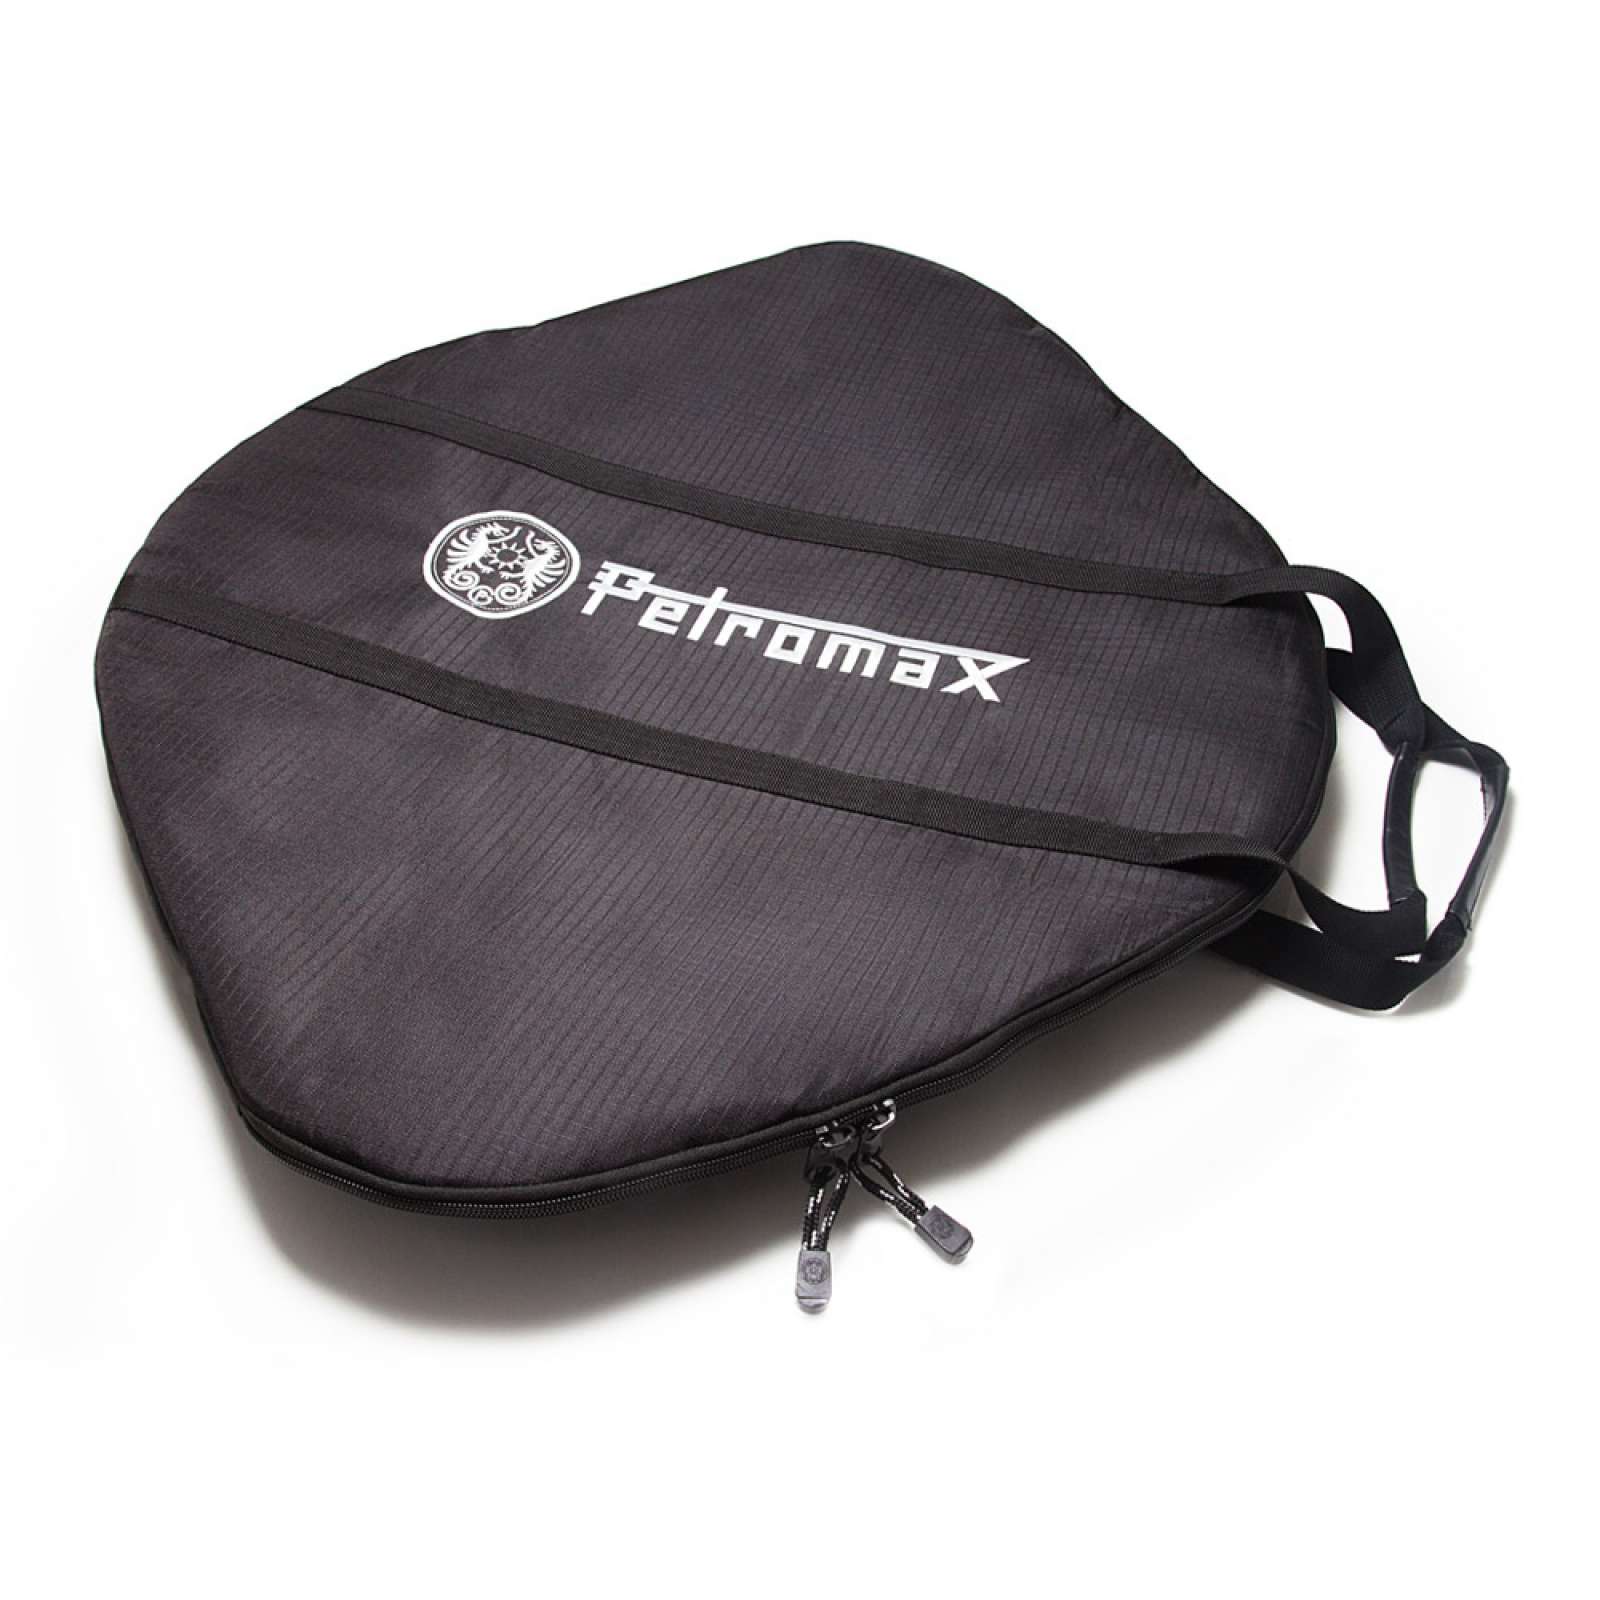 Petromax Transporttasche für Grill- und Feuerschale fs56